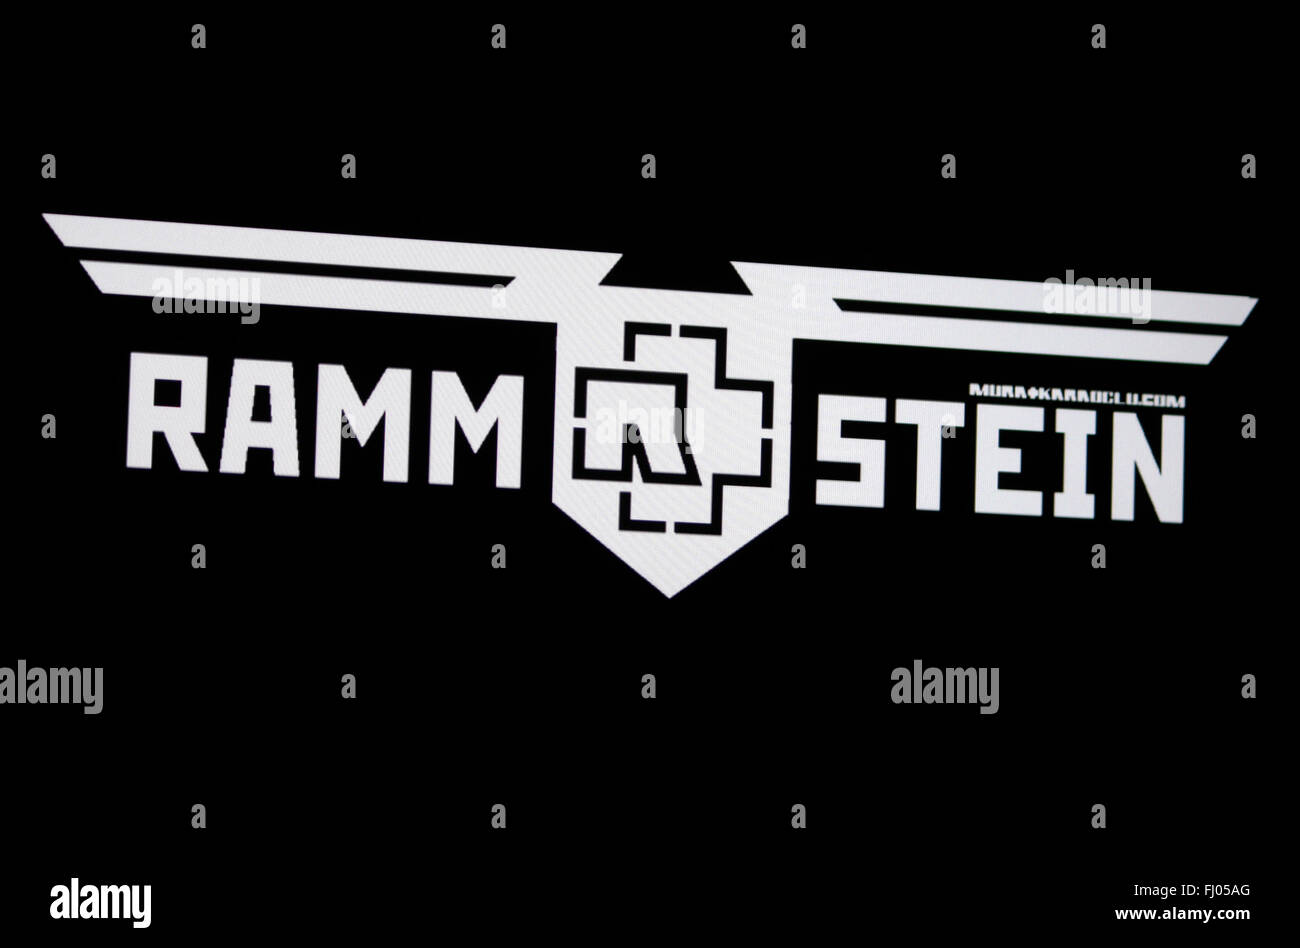 Das Logo der Band Rammstein, Berlin Stockfotografie - Alamy